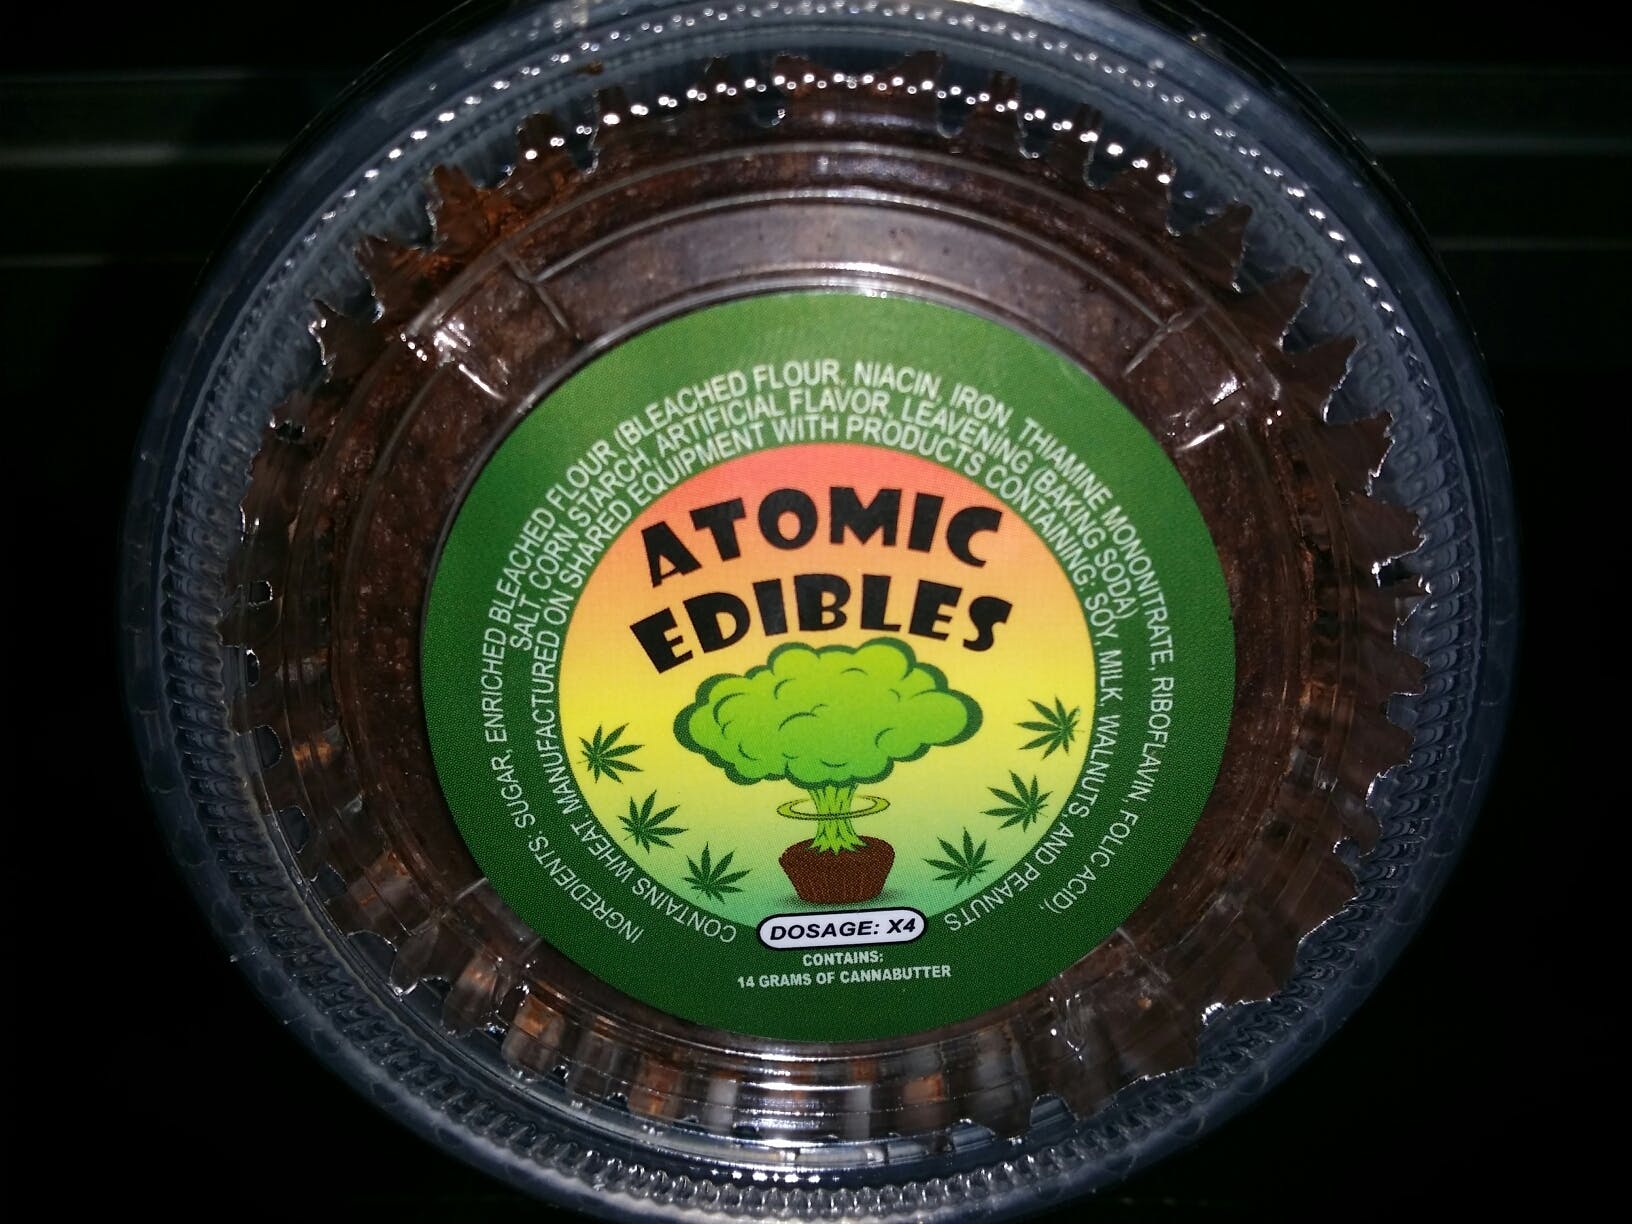 edible-atomic-edibles-14-grams-cannabutter